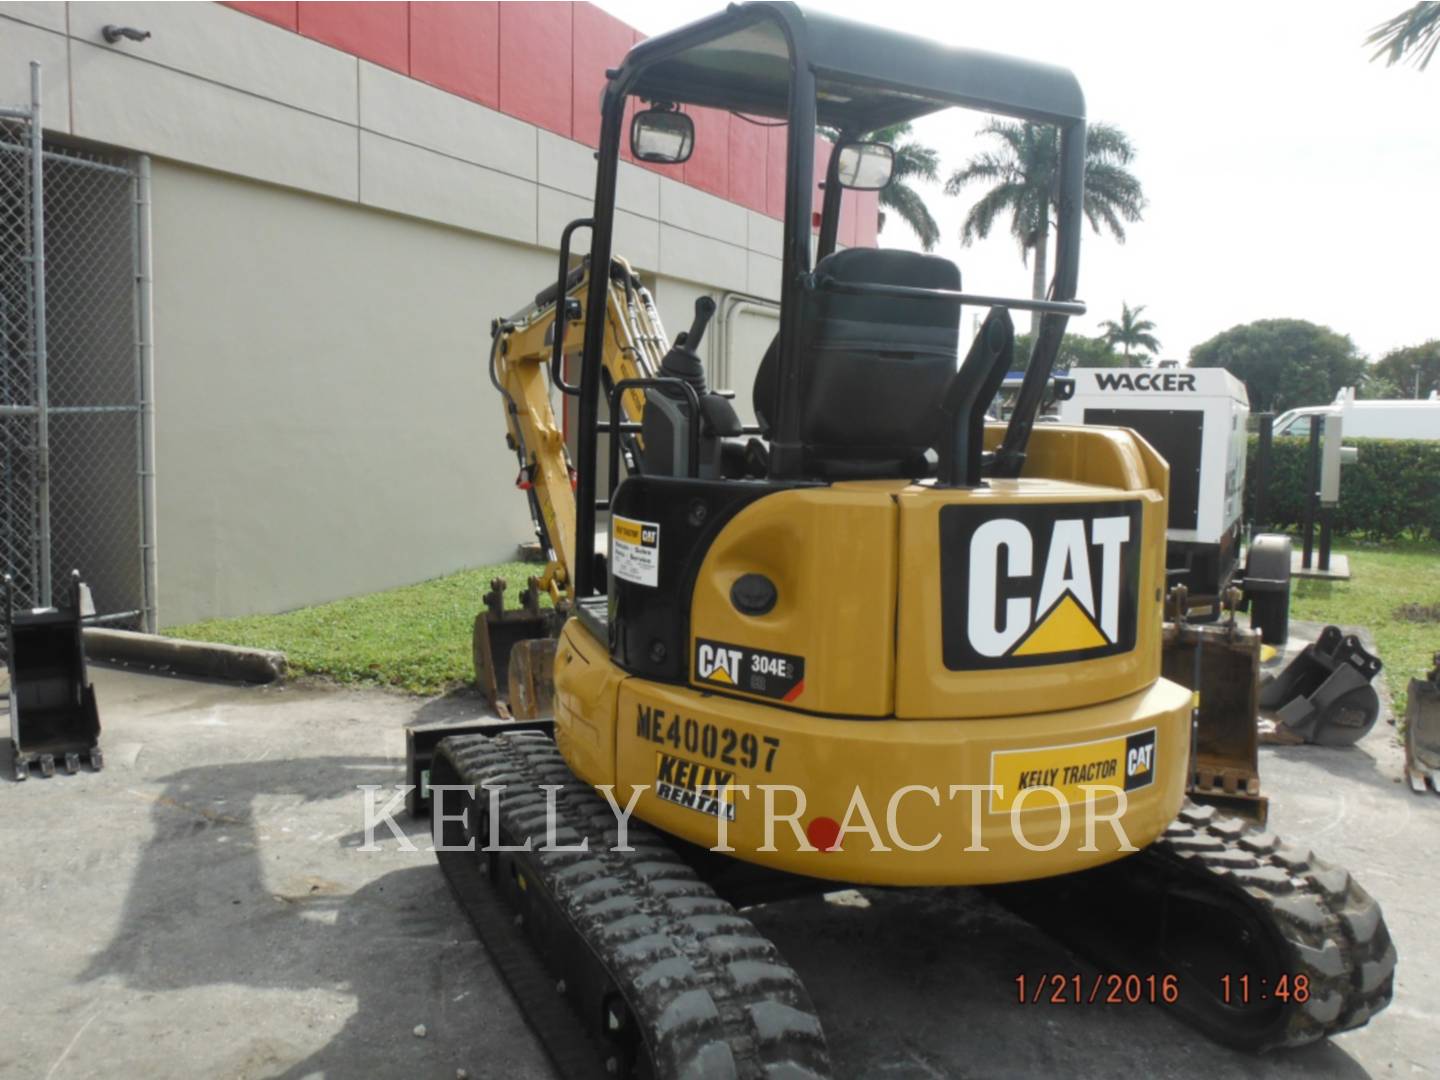 15 Caterpillar 304 E2 Cr Excavator For Sale In Miami Fd Ironsearch